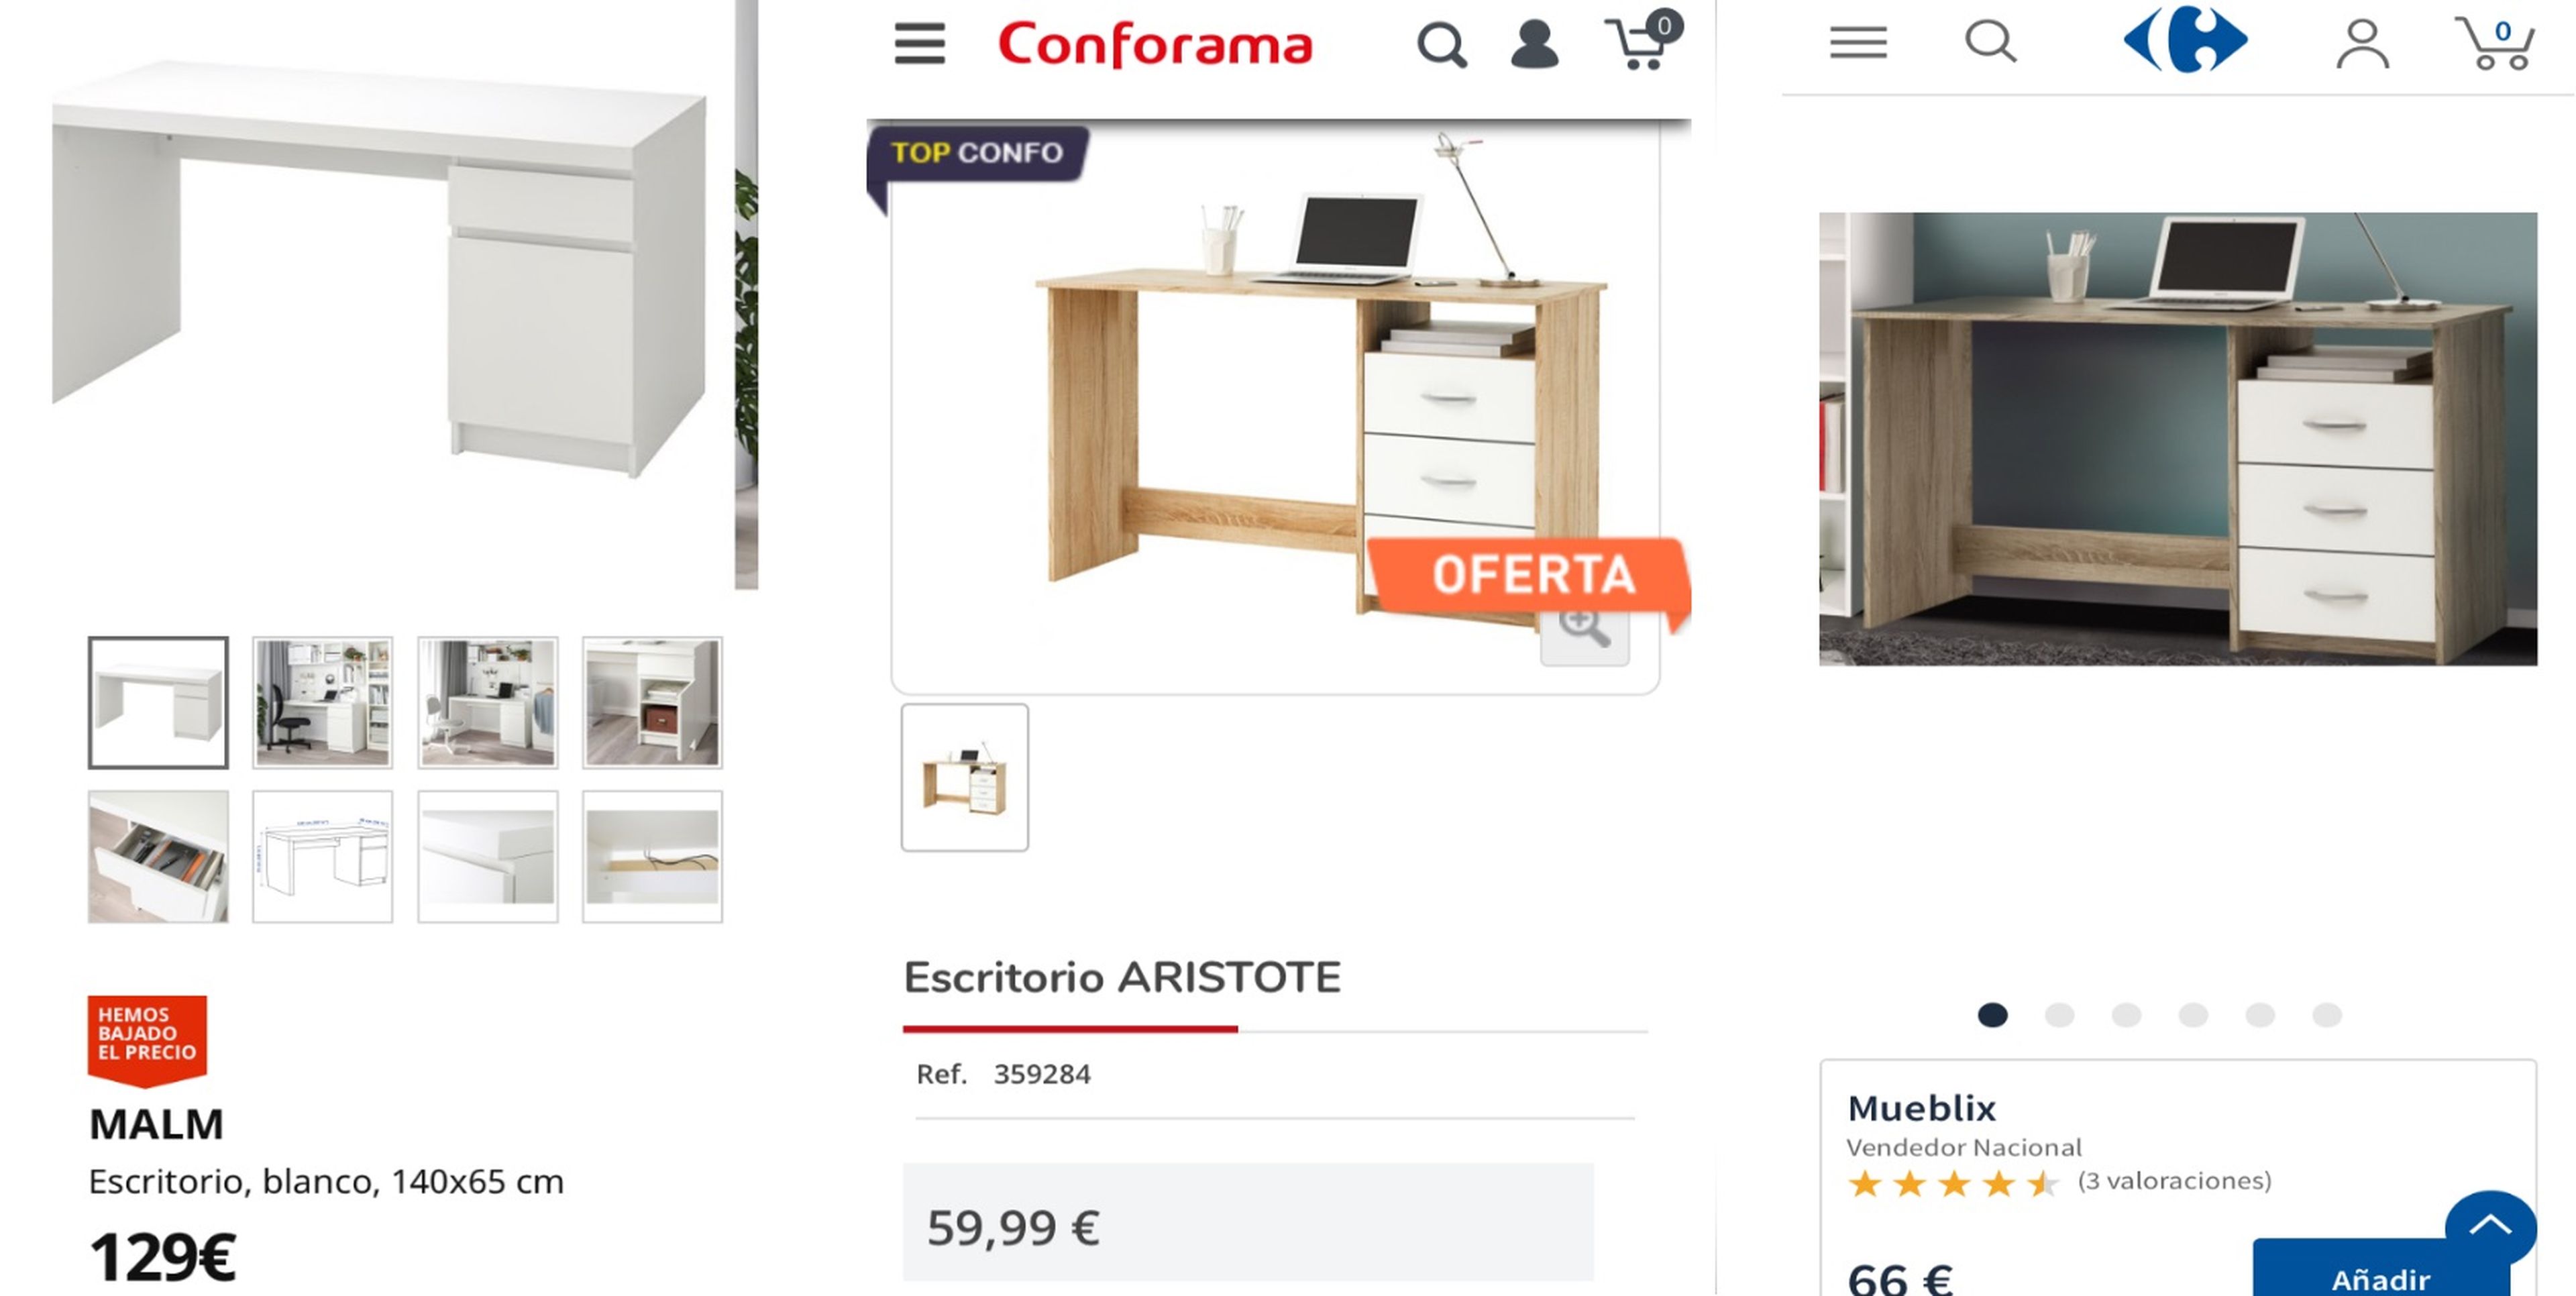 Cómo amueblar tu habitación por 600 euros: escritorios